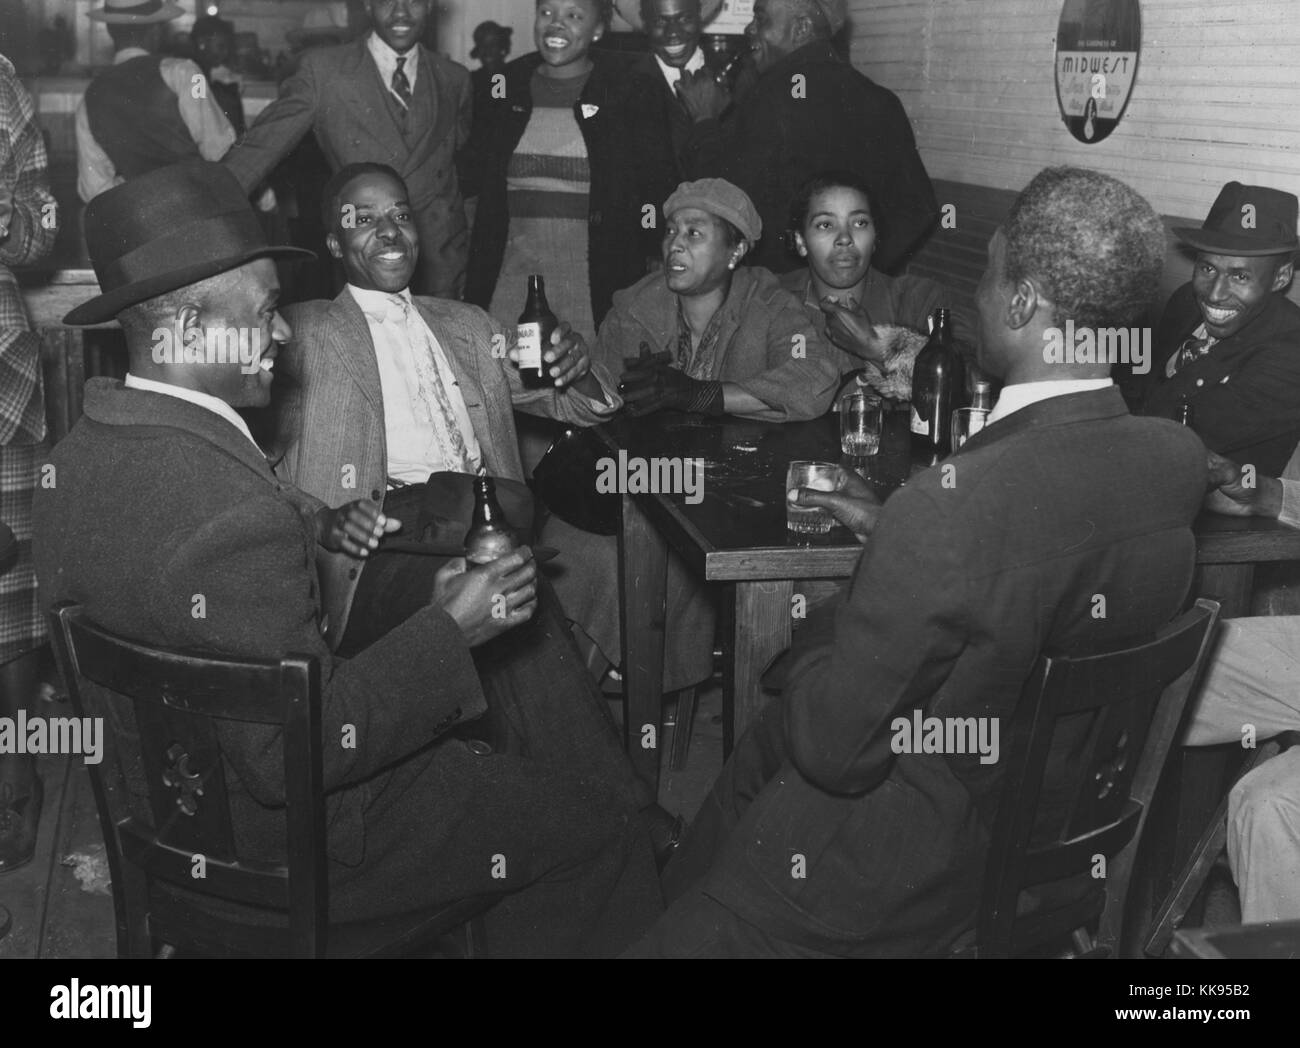 Schwarz-weiß Foto der afroamerikanischen Männern und Frauen in Anzügen und Kleidern, Sitzen und Stehen, trinken an der Bar, Clarksdale, Mississippi Delta, Mississippi, 1939. Von der New York Public Library. Stockfoto